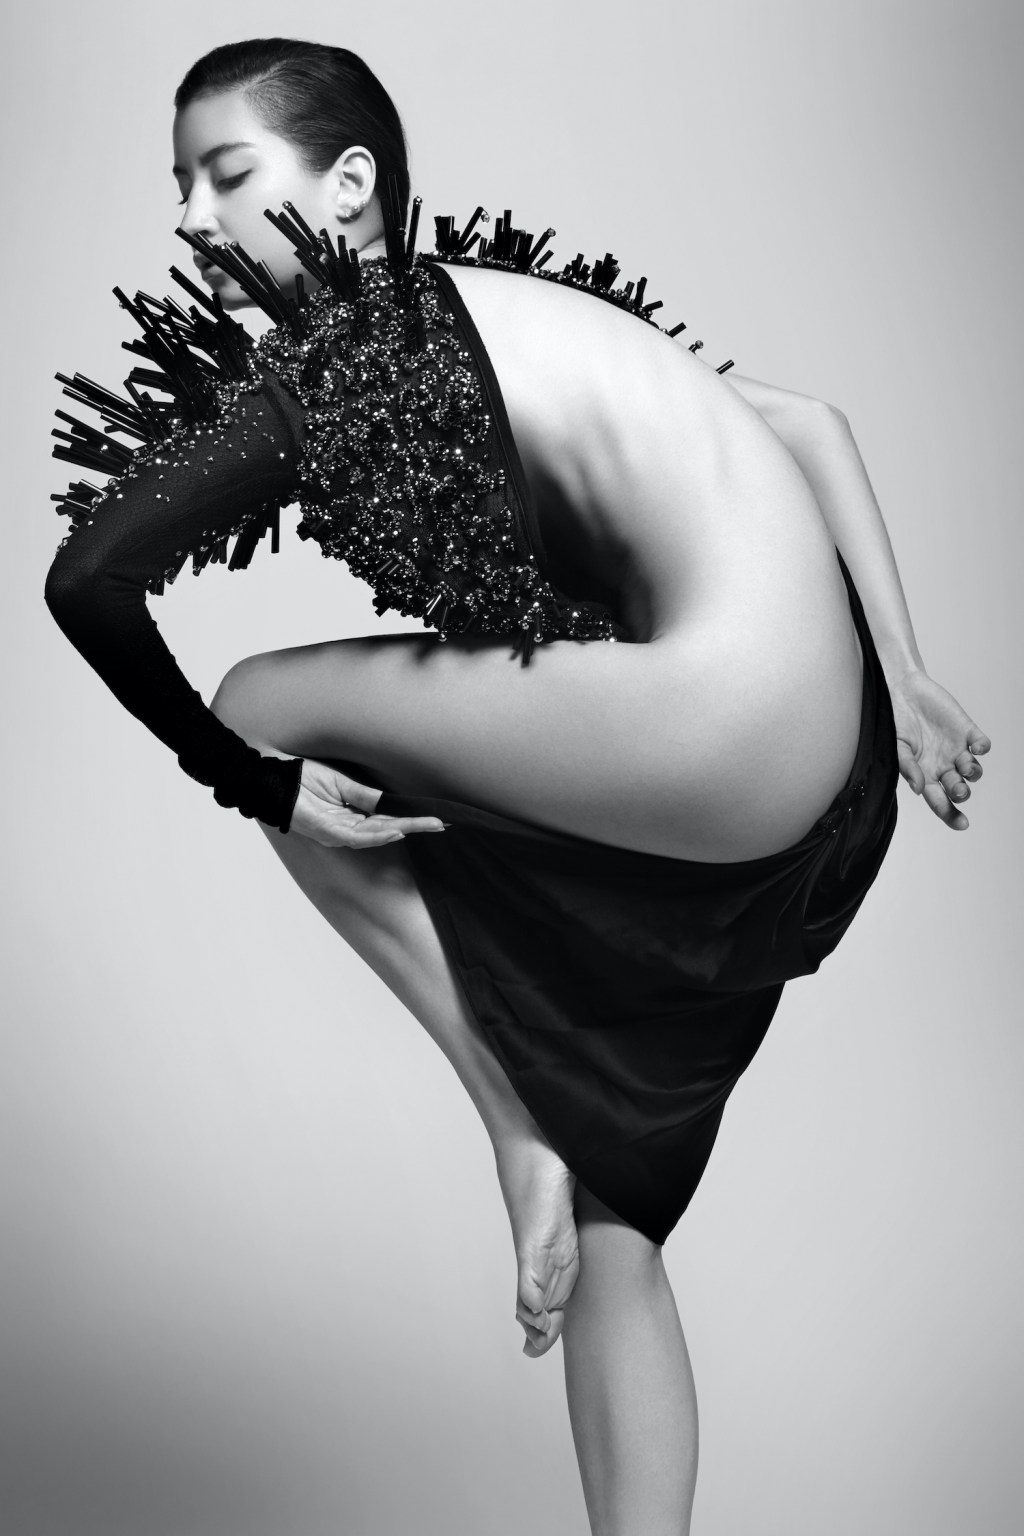 Η ηθοποιός και μοντέλο Emilie Payet σε γυμνή φωτογράφηση